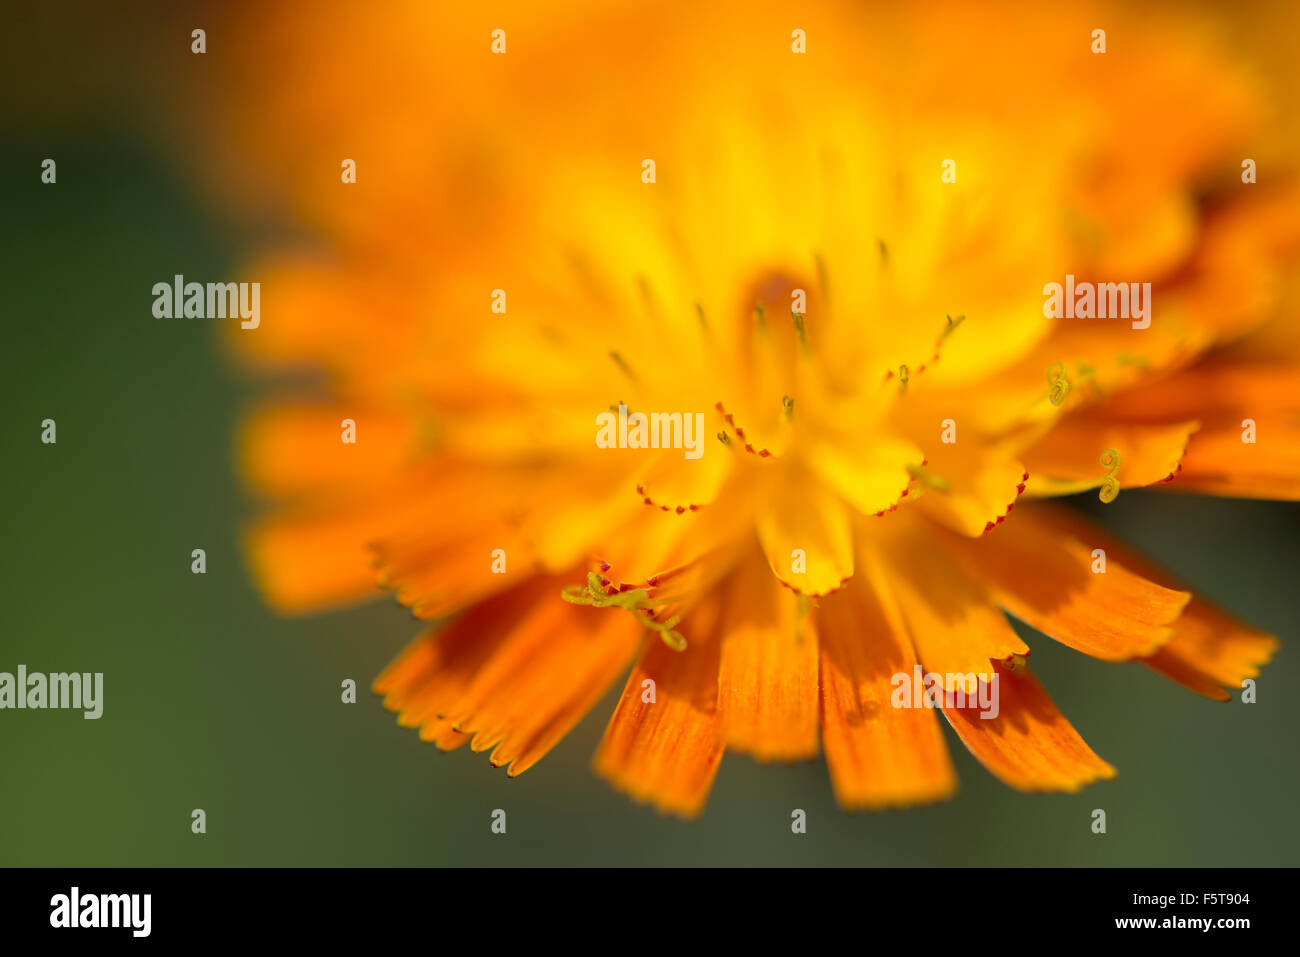 Nahaufnahme einer Pilosella Aurantiaca Blume mit leuchtend orangen Blüten. Stockfoto